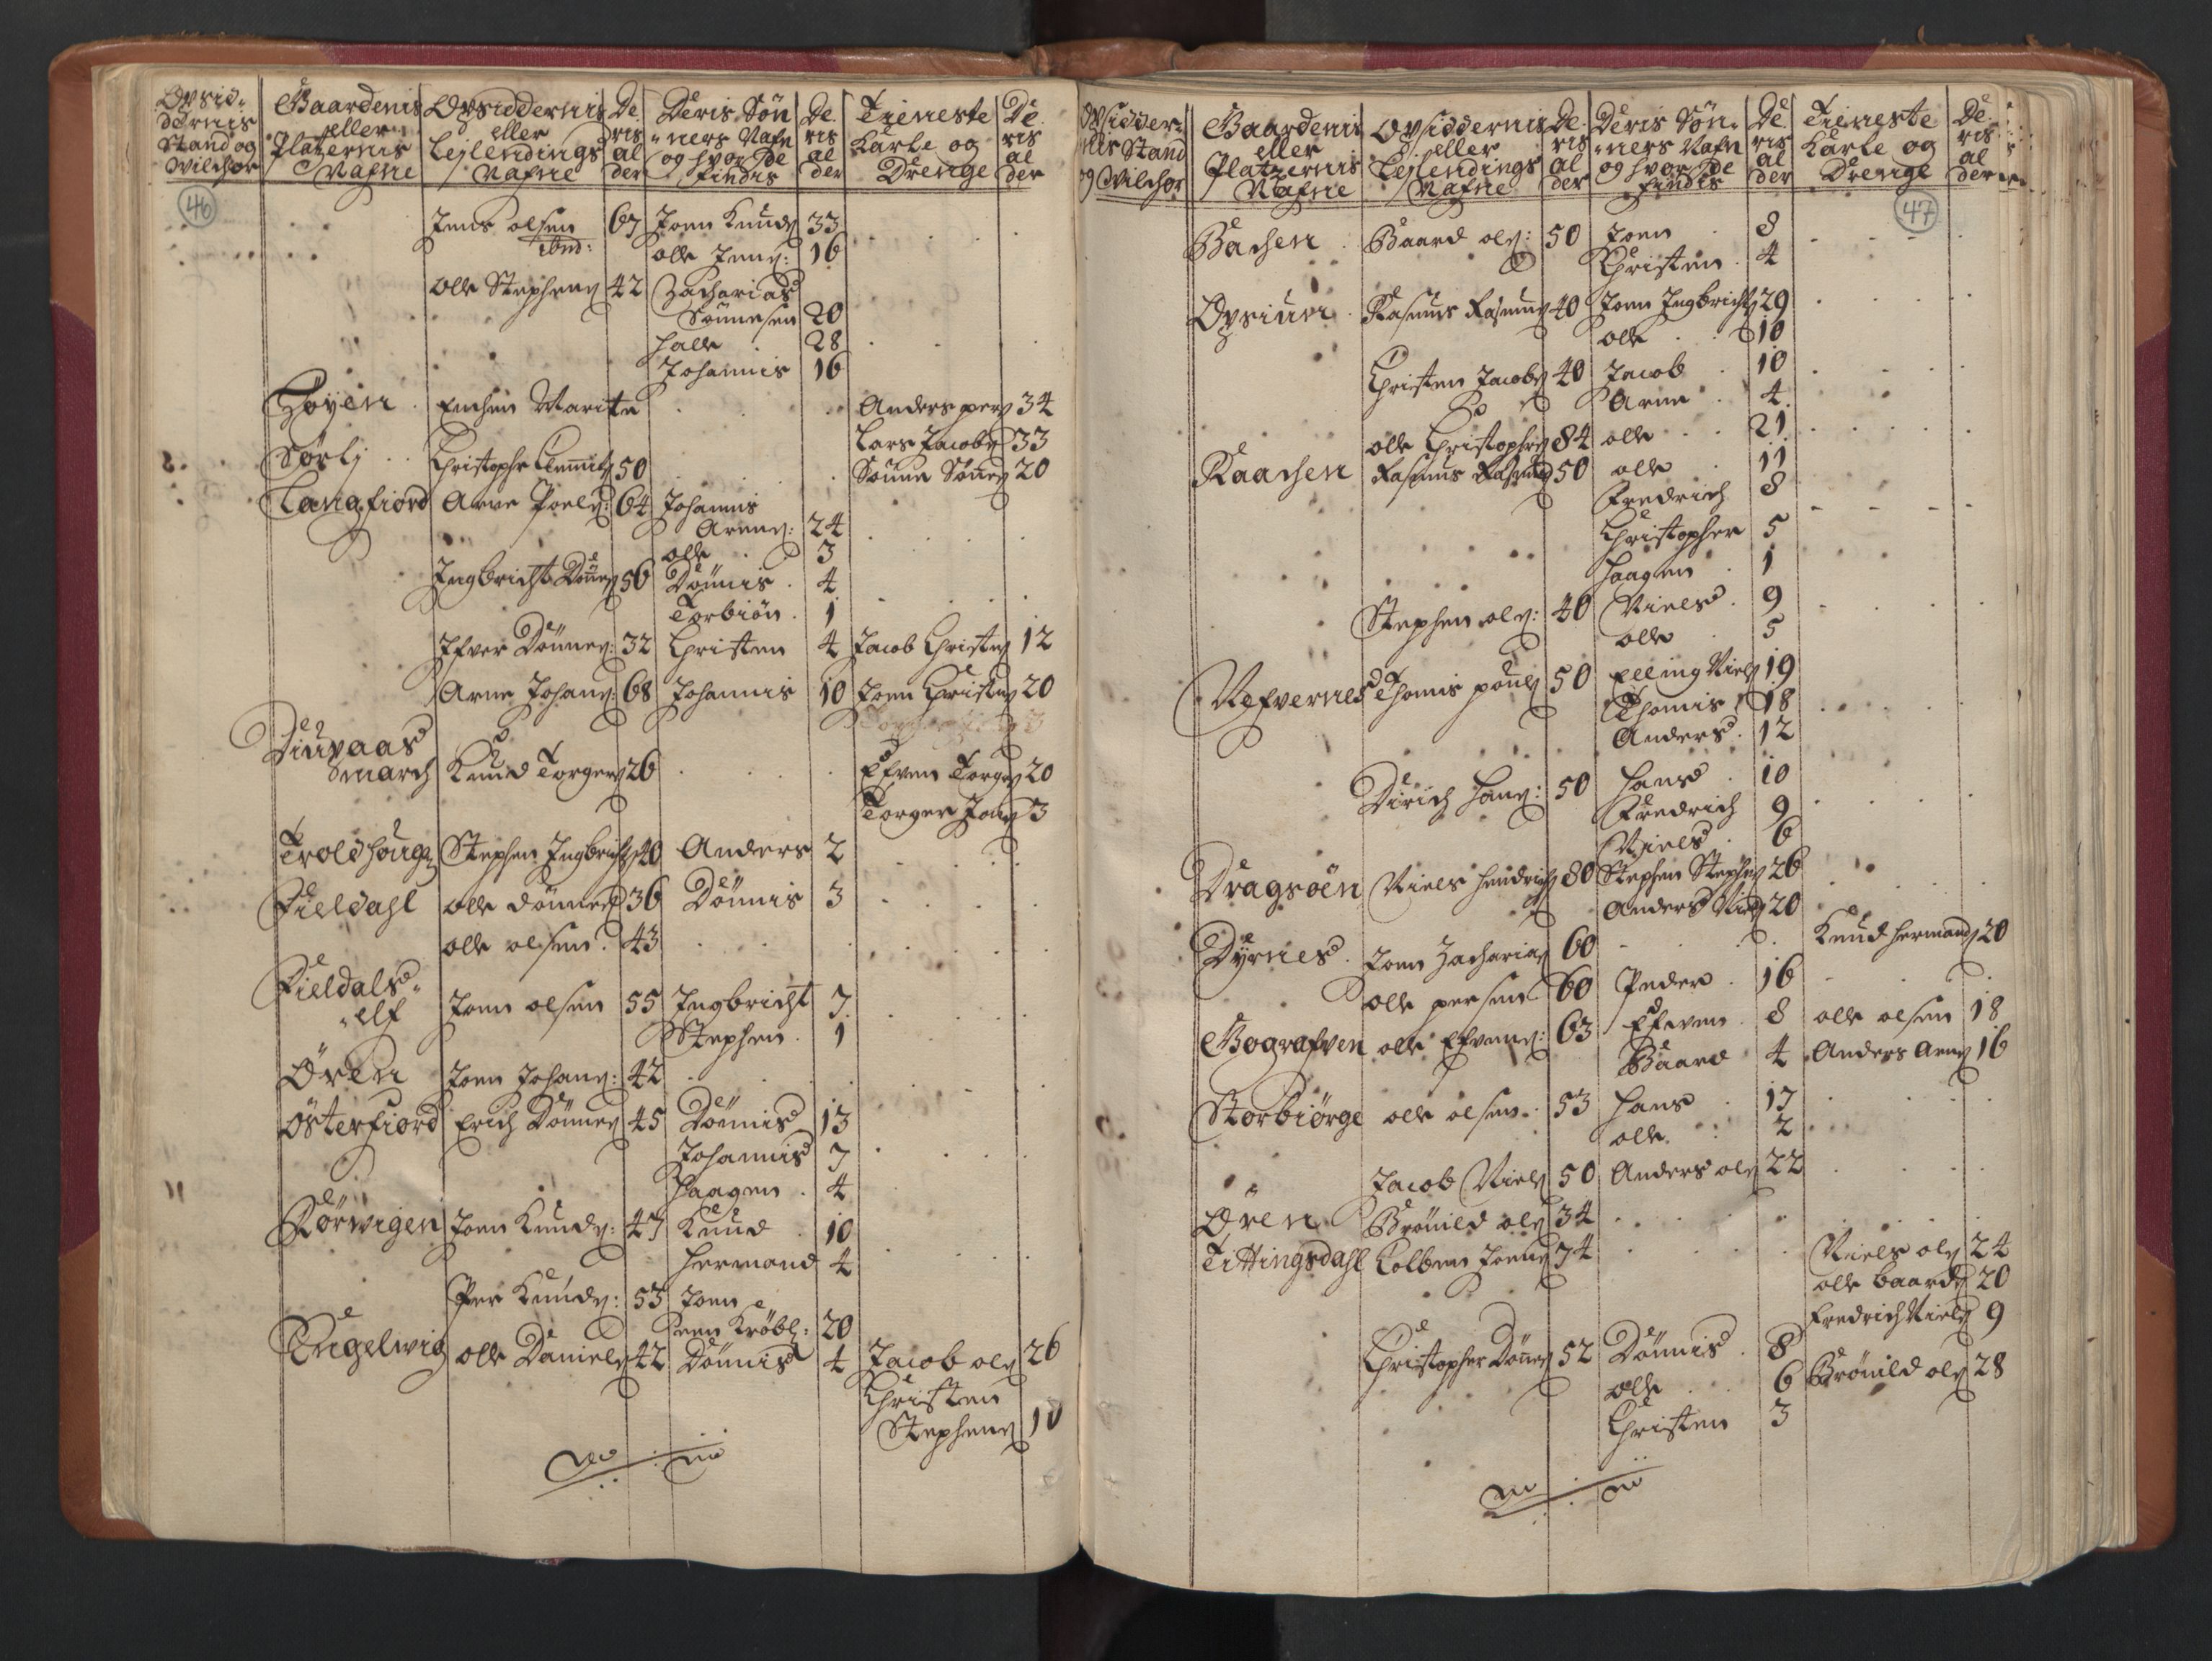 RA, Manntallet 1701, nr. 16: Helgeland fogderi, 1701, s. 46-47